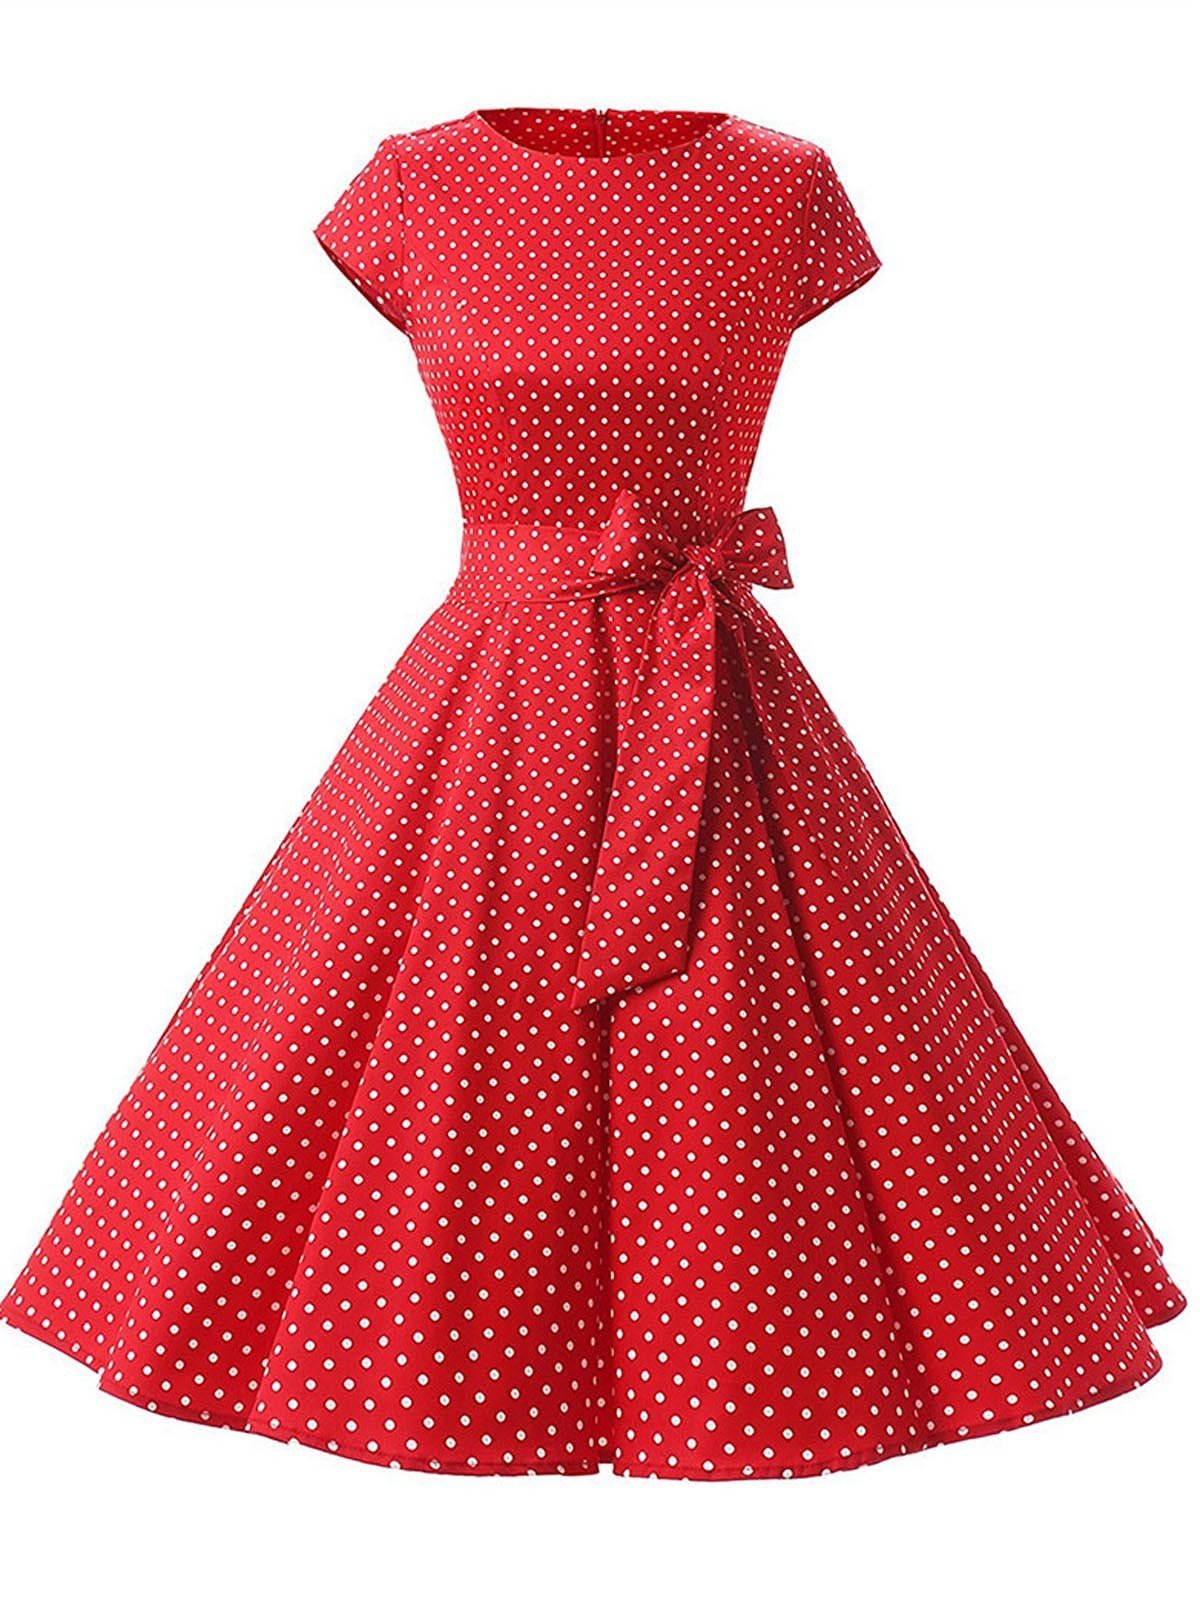 Голубое свободное платье в горошек 1950-х годов